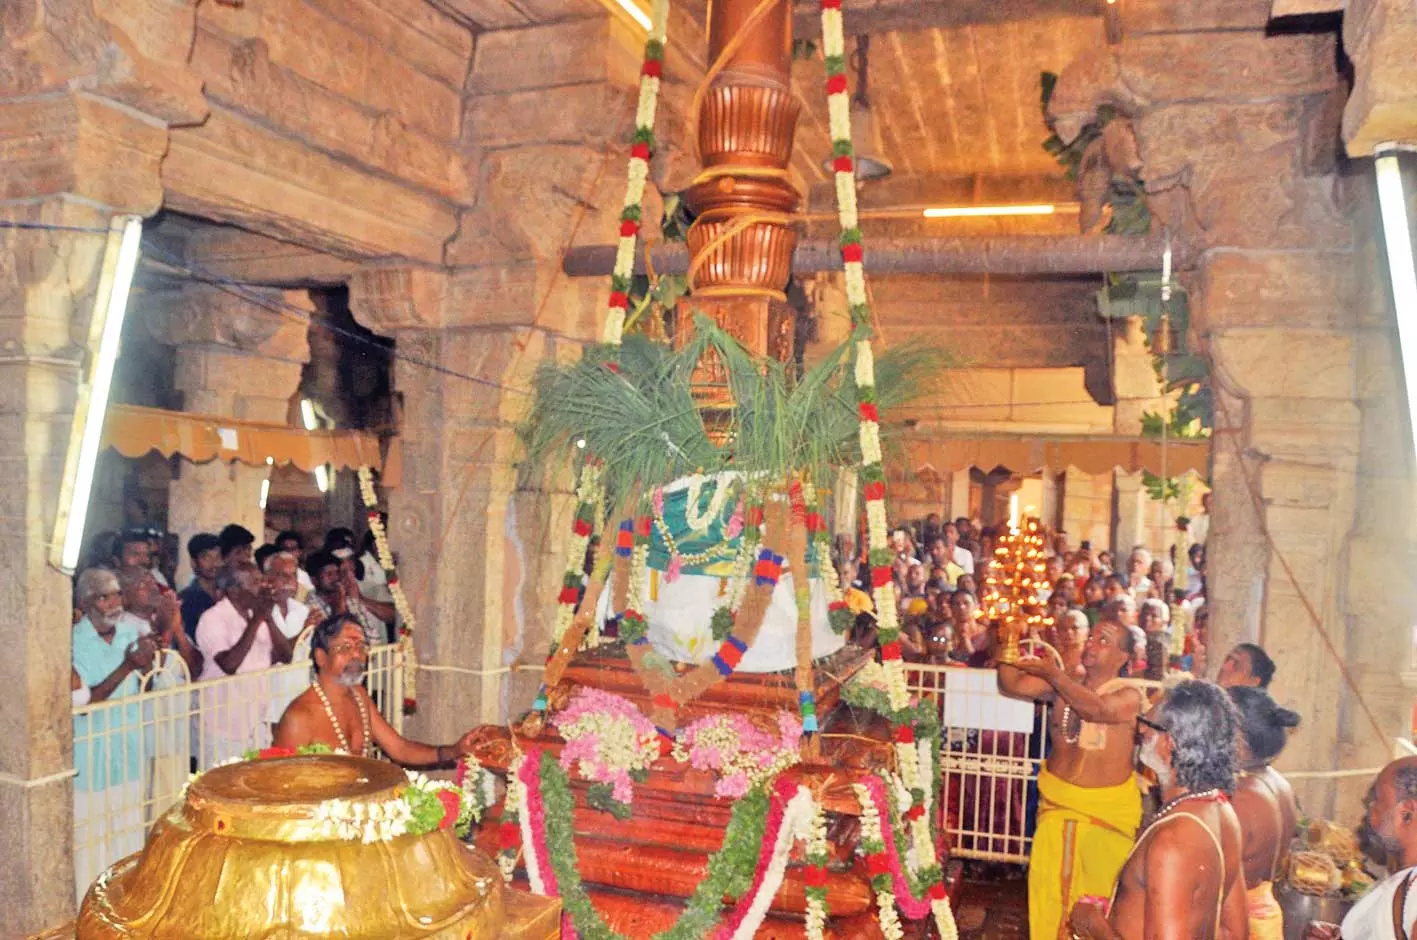 வள்ளியூர் முருகன் கோவிலில் சித்திரை திருவிழா கொடியேற்றம் | Chithirai Festival Flag Hoisting at Valliyur Murugan Temple